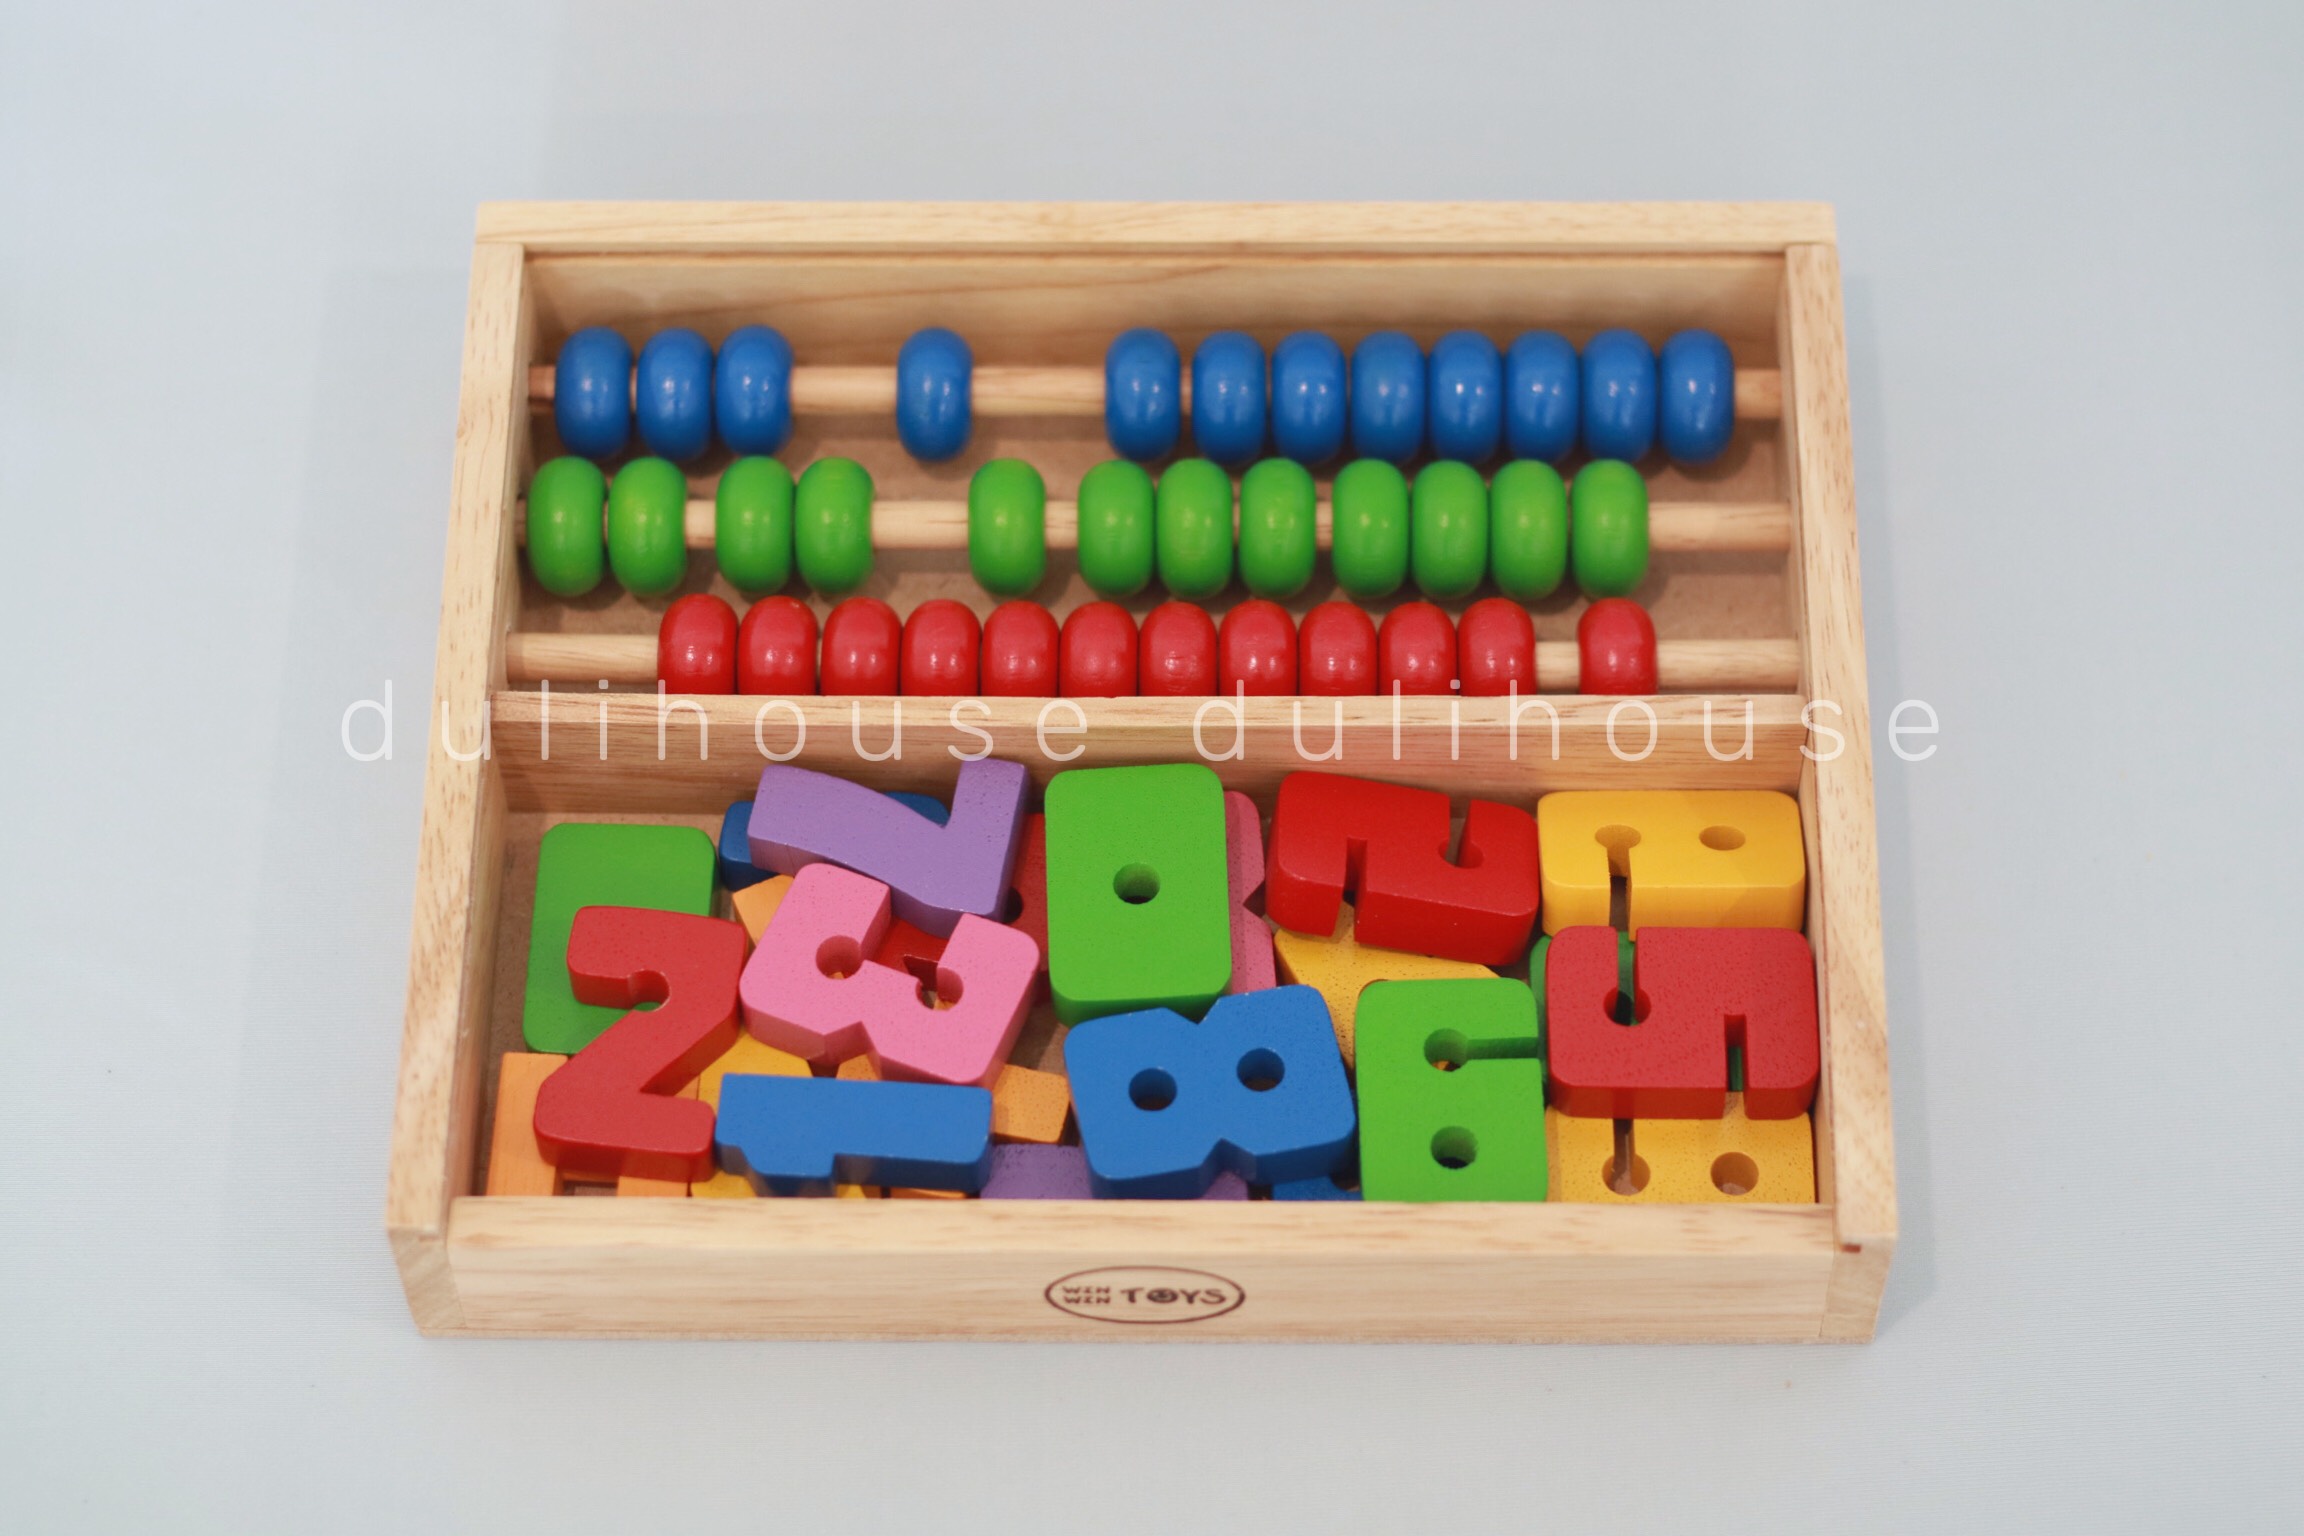 Đồ chơi gỗ cao cấp Bảng tính học đếm, giúp bé học đếm, nhận biết chữ số & thực hiện các phép toán cộng, trừ trên bảng tính và trên bộ số từ 0 - 9,  hỗ trợ nâng cao khả năng tư duy và trí thông minh của bé - Sản xuất tại Việt Nam